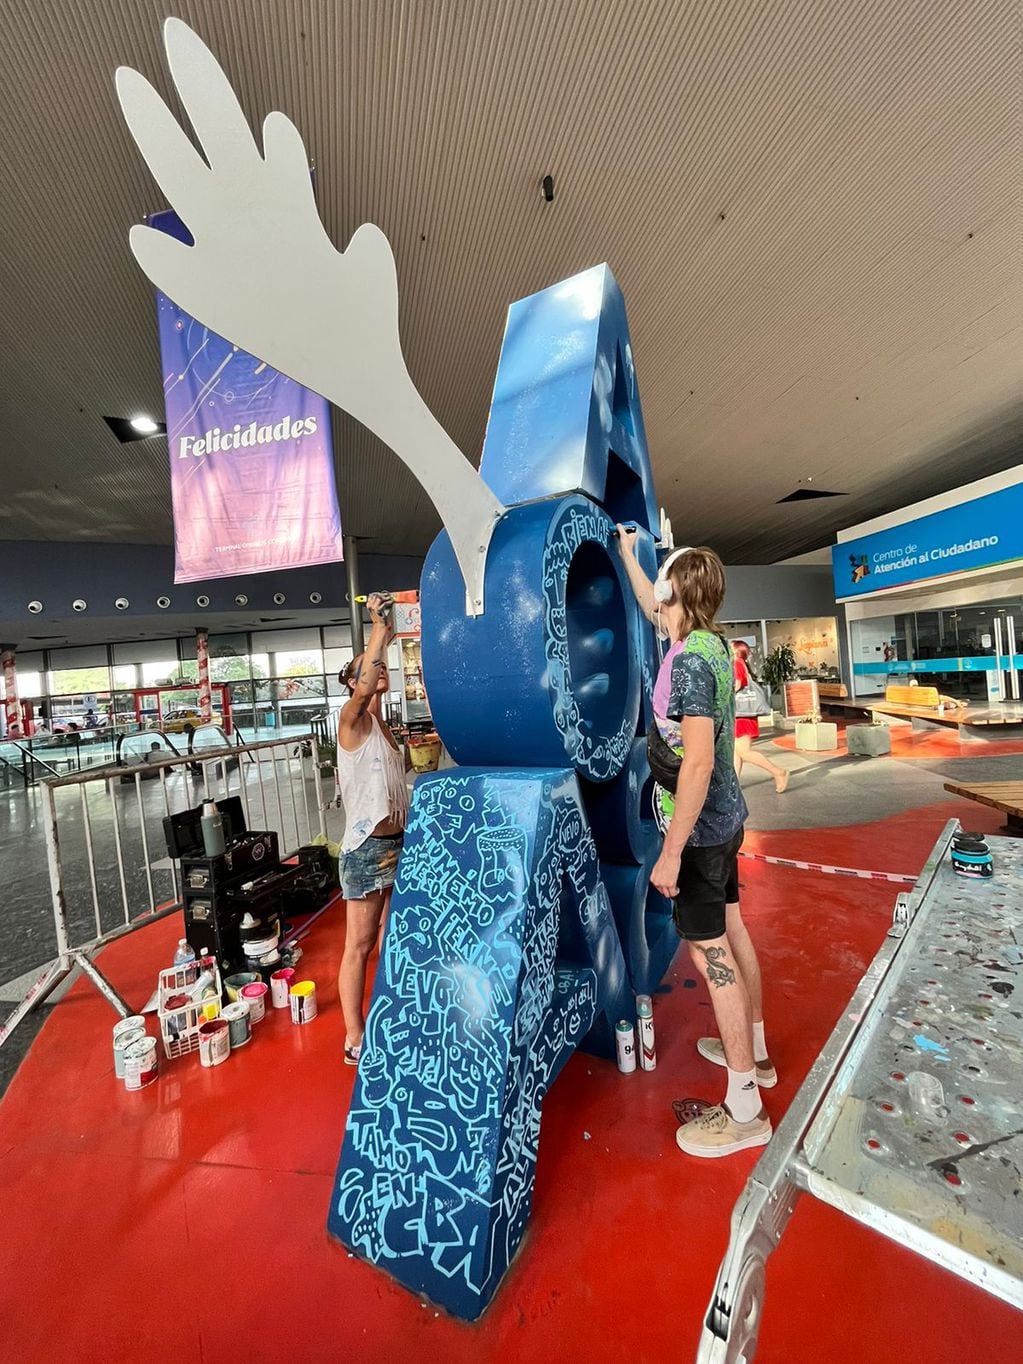 La Nueva Terminal tiene una nueva intervención artística para mostrar, la escultura de Amocba. (Gentileza)